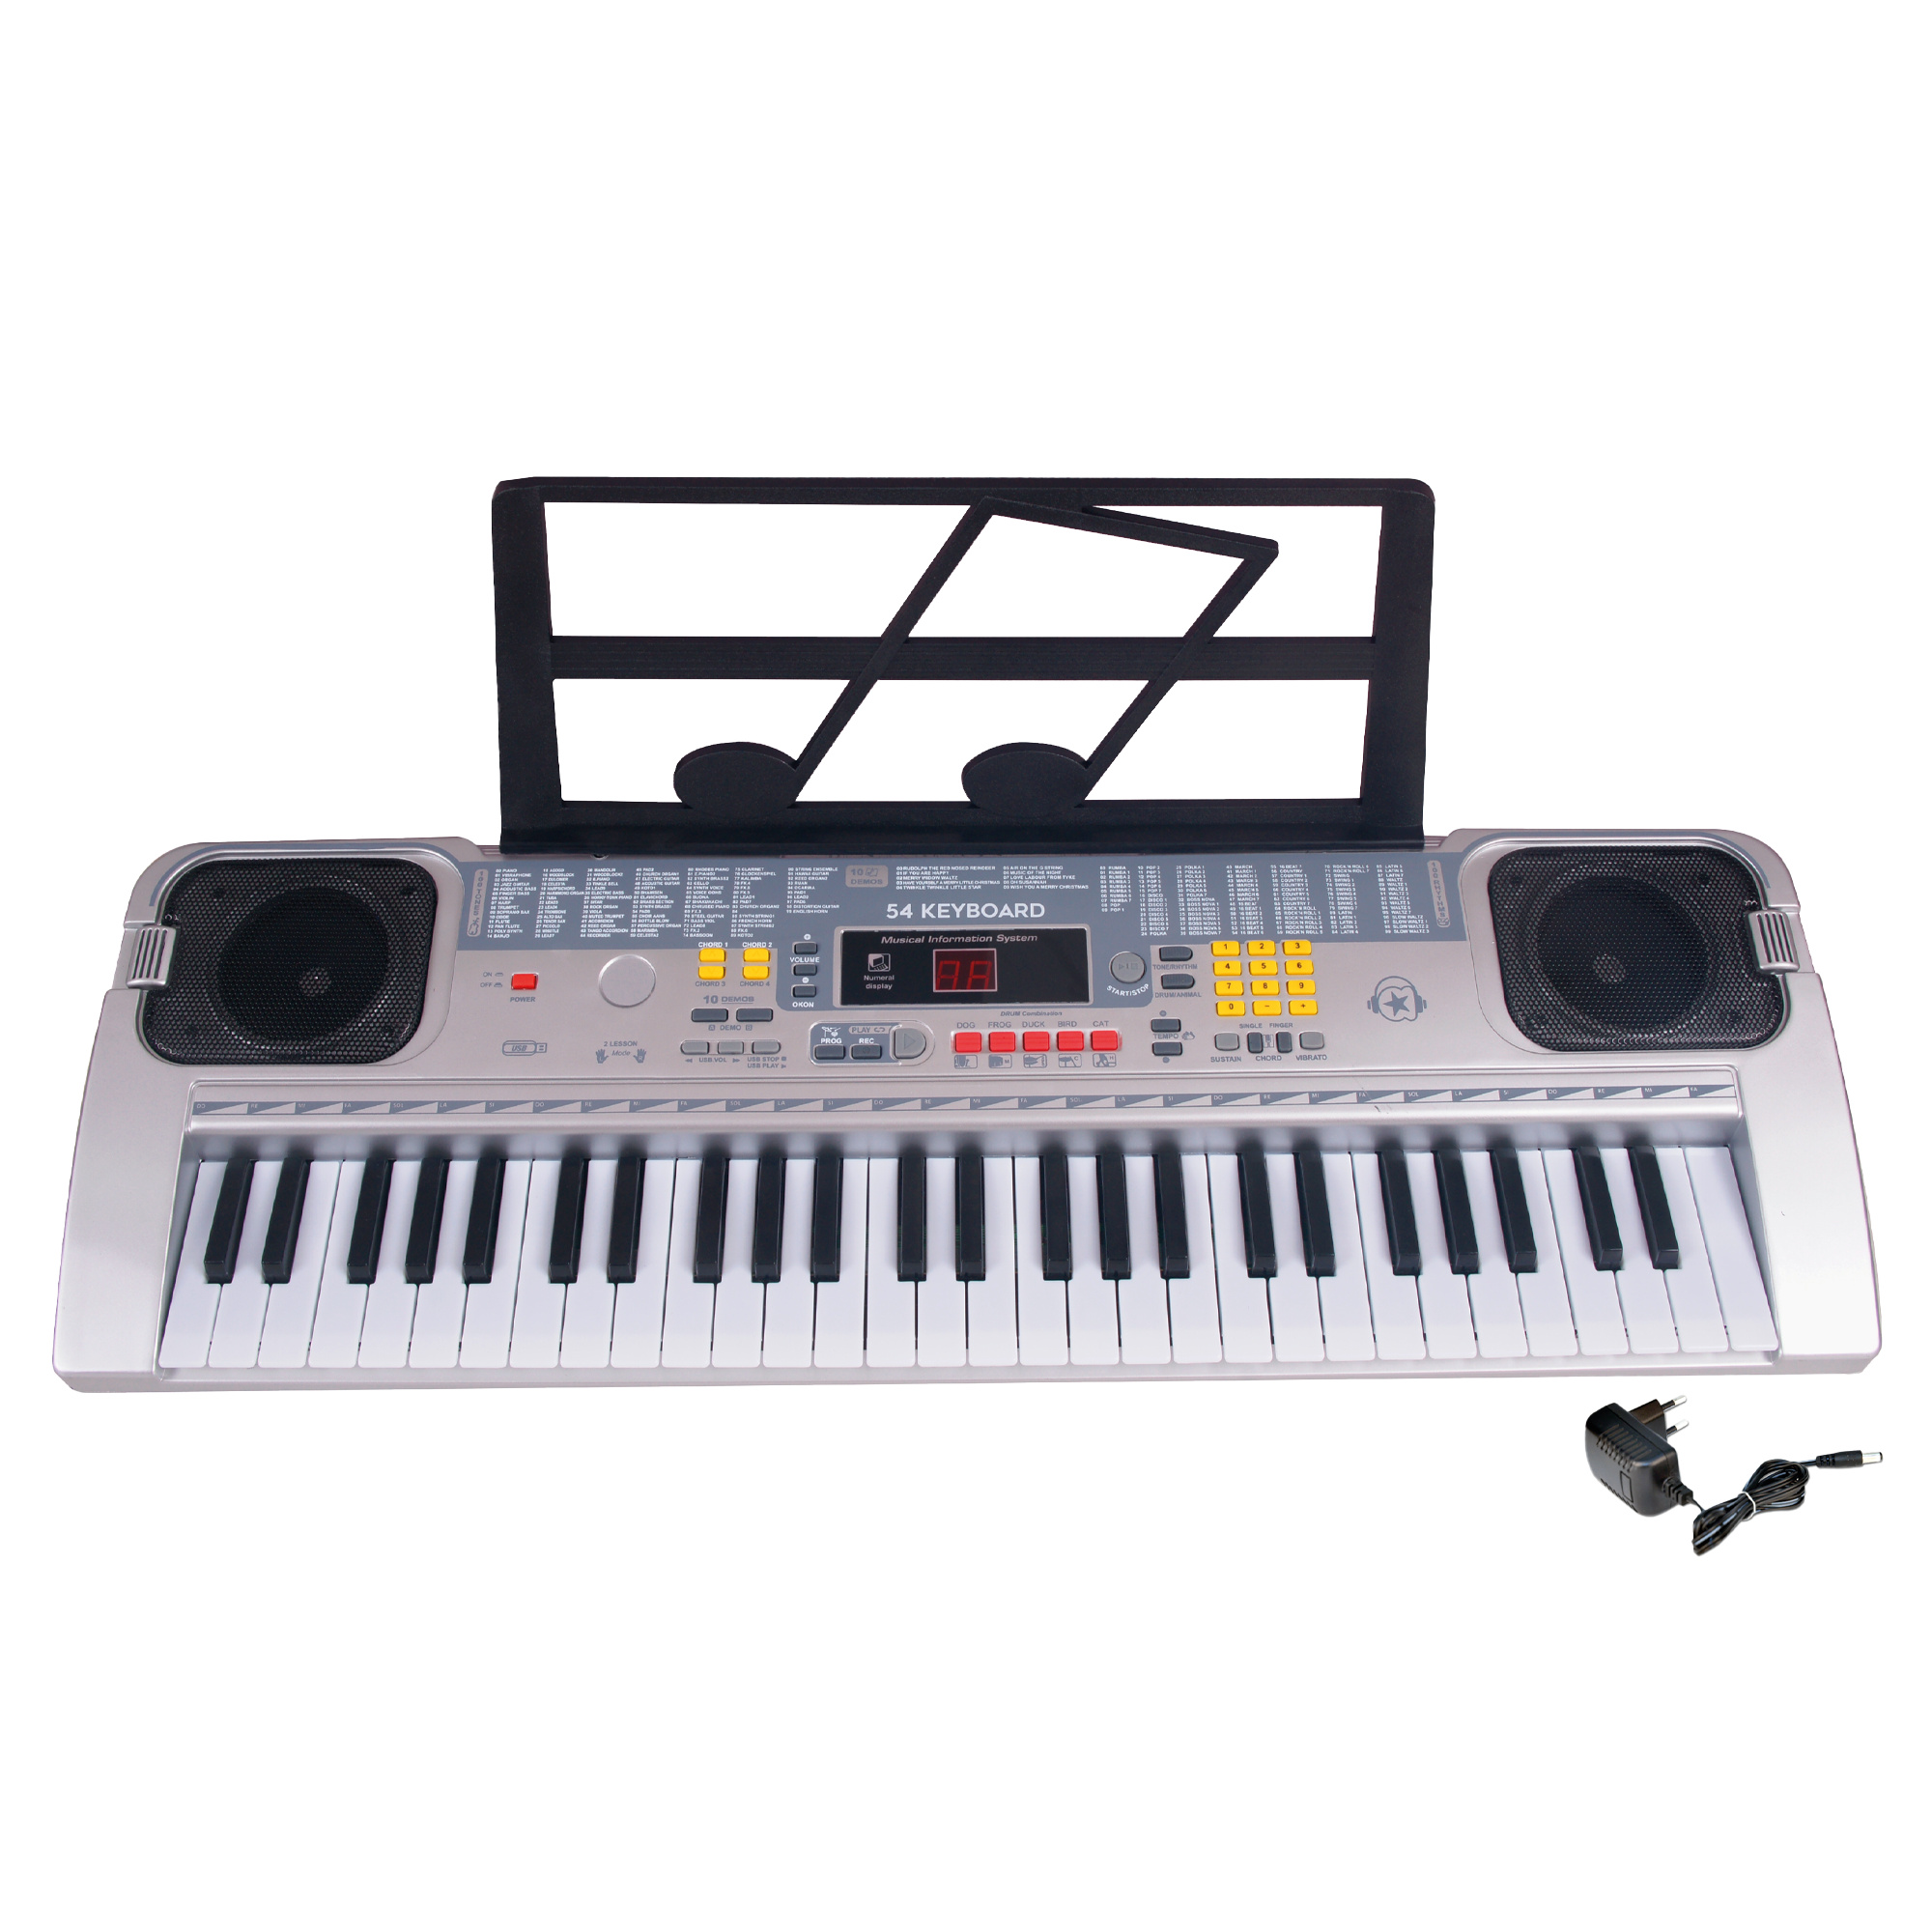 Tastiera musicale per bambini - music star -  54 tasti e infinite possibilità di creazione musicale! - MUSICSTAR